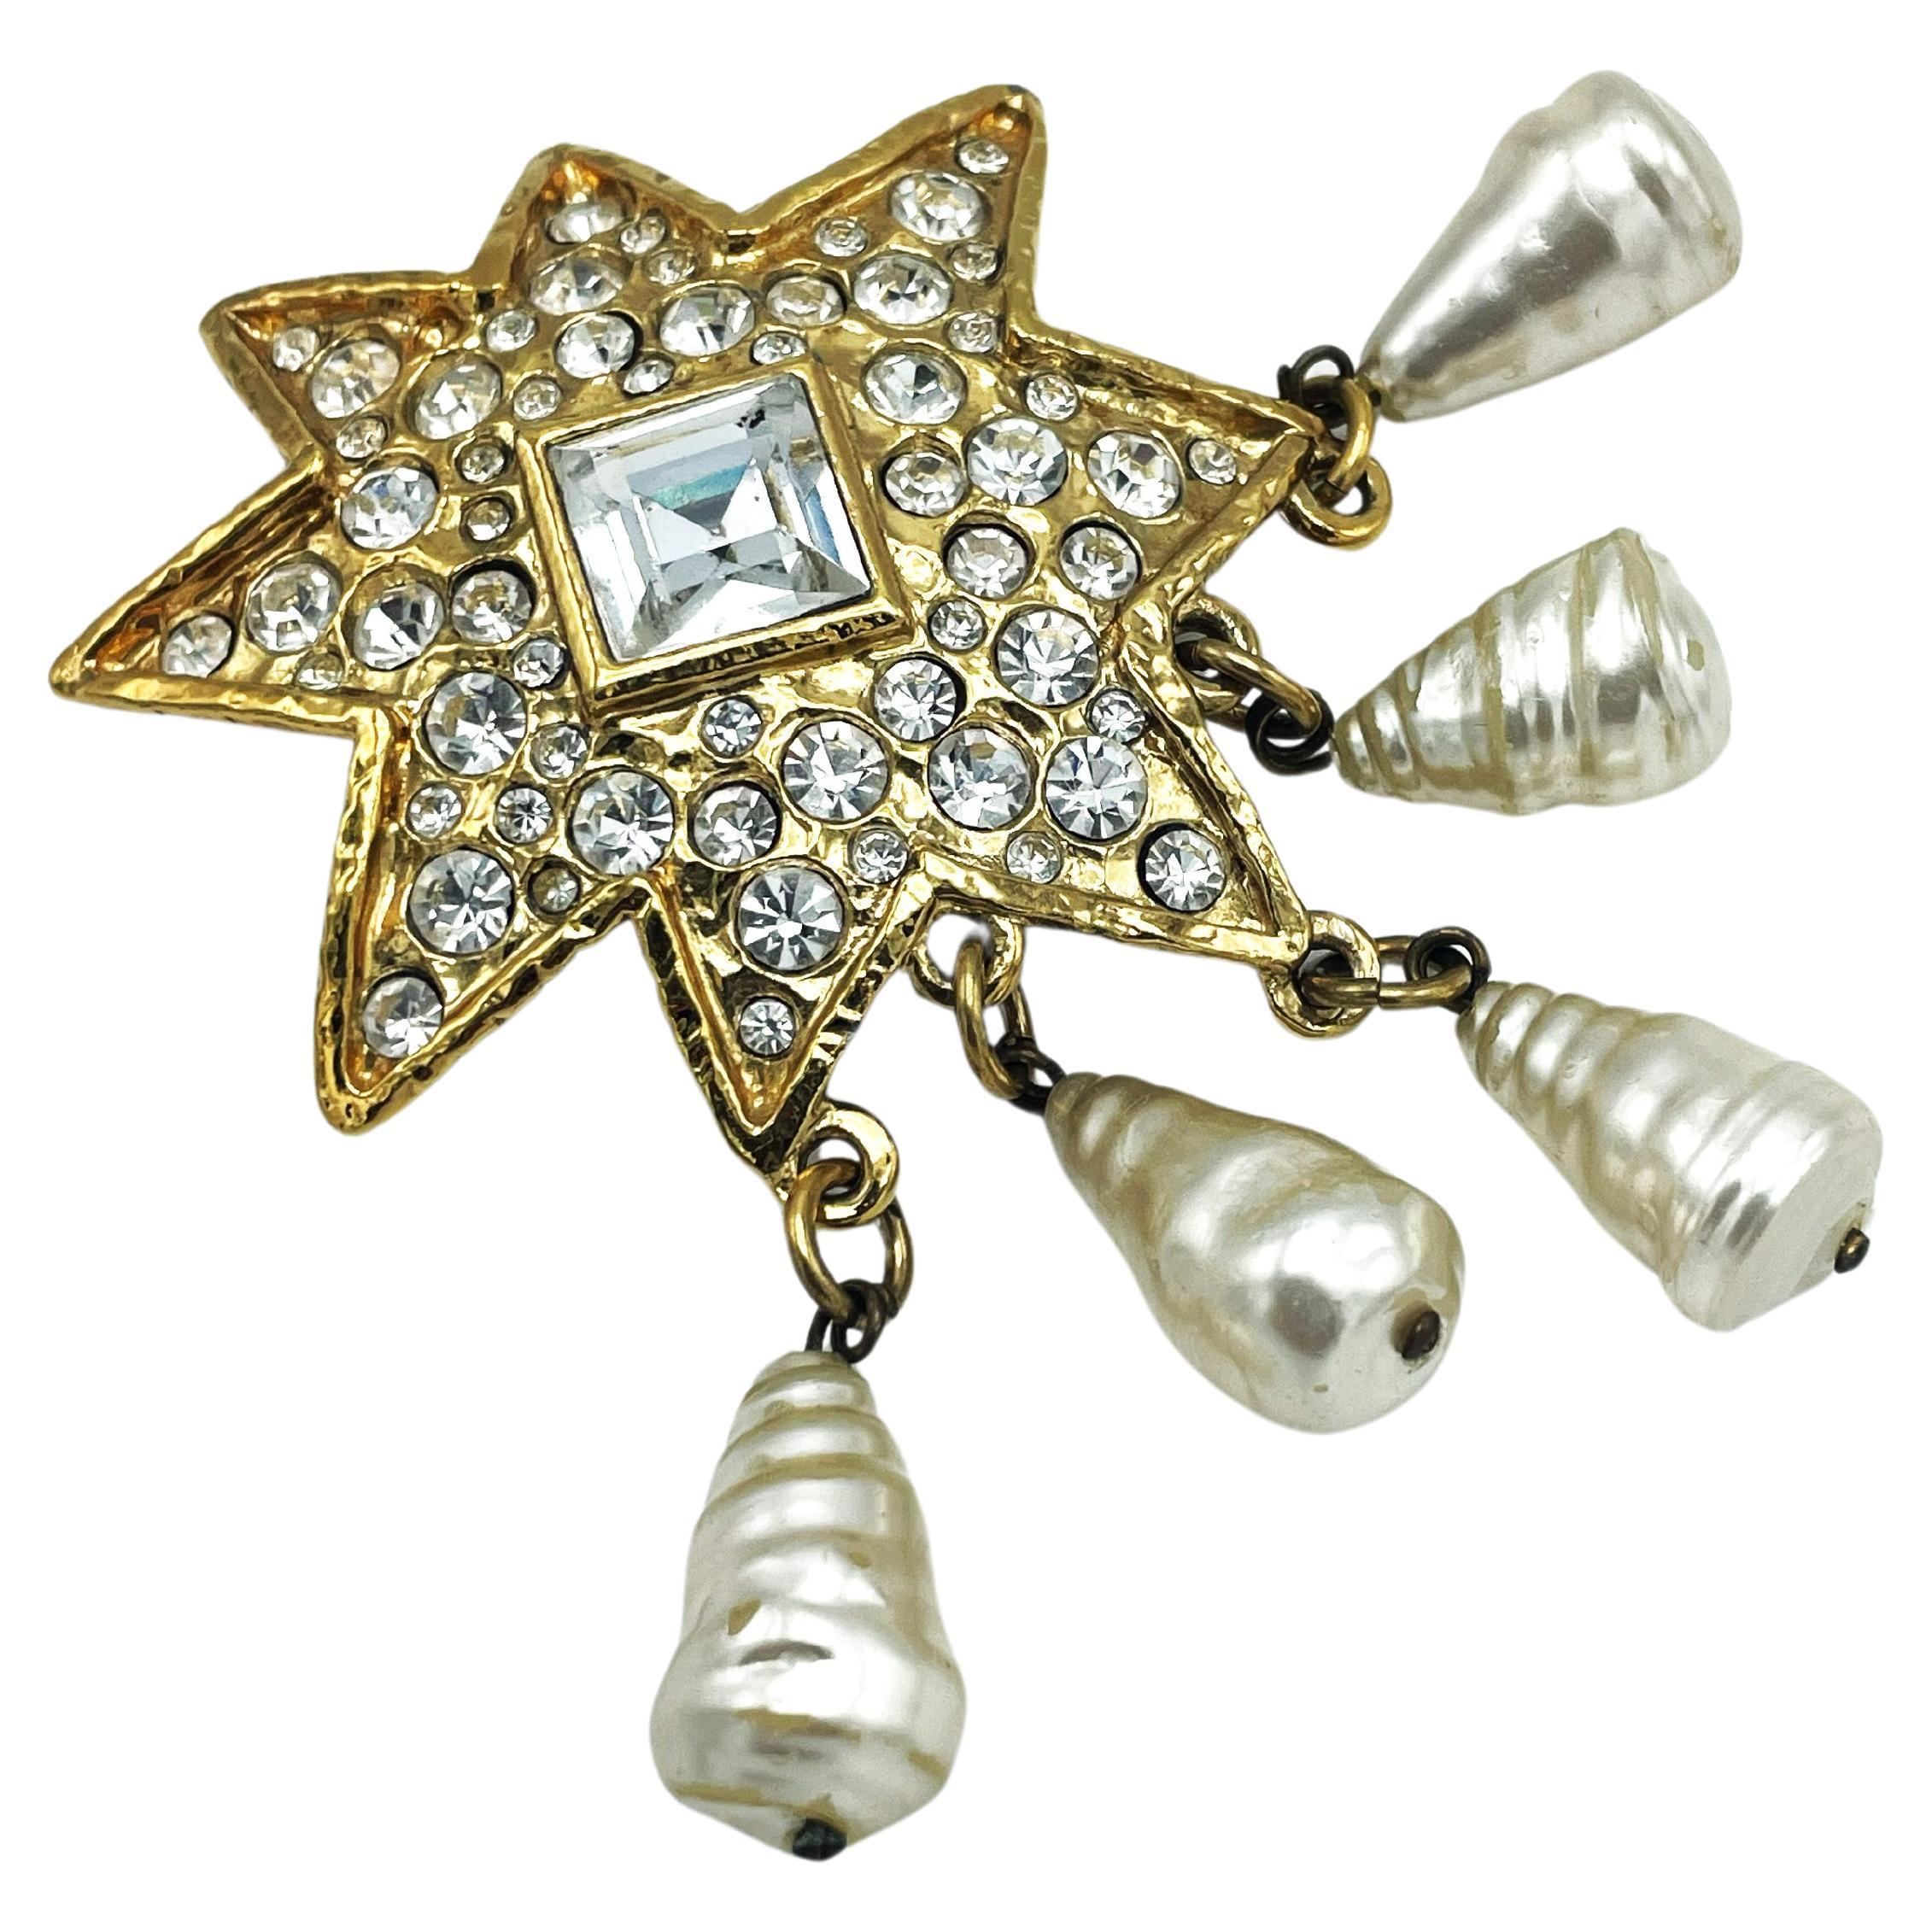 
CHRISTIAN LACROIX STAR BROOCH (Made in France) vollständig mit Strasssteinen besetzt.
In der Mitte befindet sich ein großer, quadratischer Strassstein mit den Maßen 1,5 x 1,5 cm. 

Abmessungen:  Stern 5 x 5 cm, Perlen 2,4 cm x 1,2 cm, Gesamtlänge 9